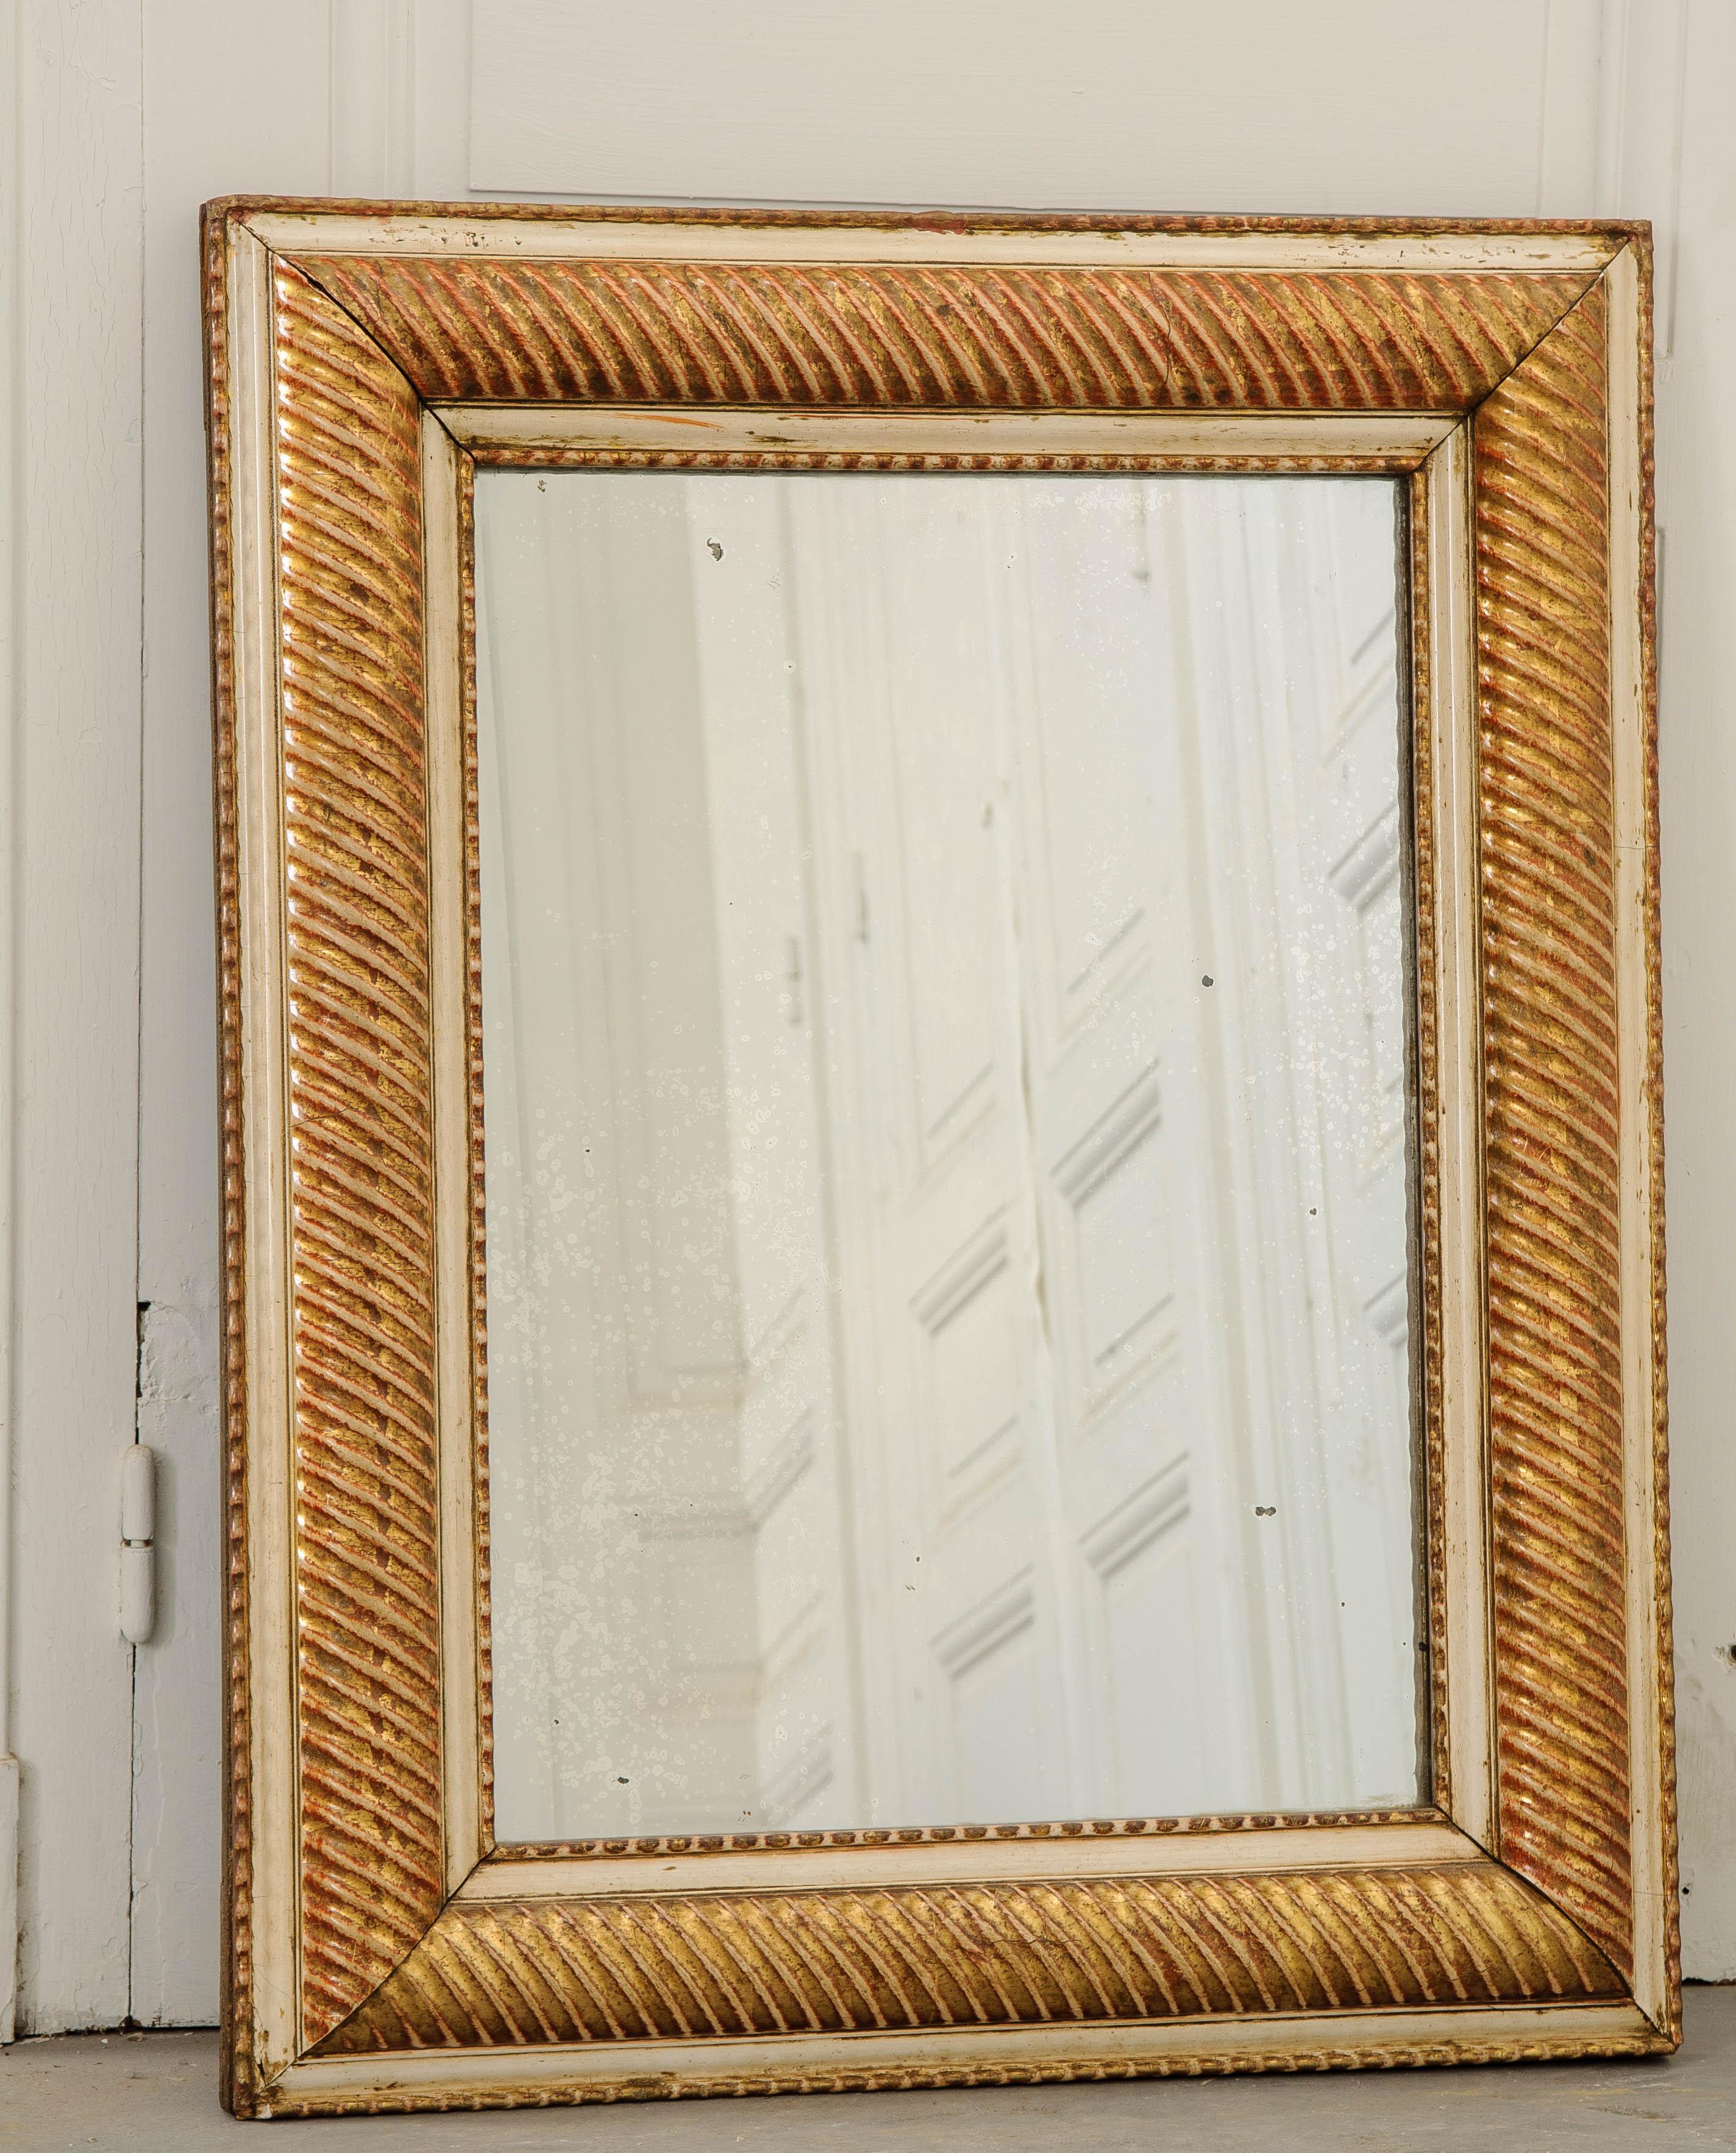 Un joli miroir en bois doré, fabriqué en France, vers 1850. Ce miroir ancien rectiligne possède un cadre épais avec un design unique qui l'encercle entièrement. Le cadre a été conçu avec un motif en tire-bouchon qui voit des nervures orientées en